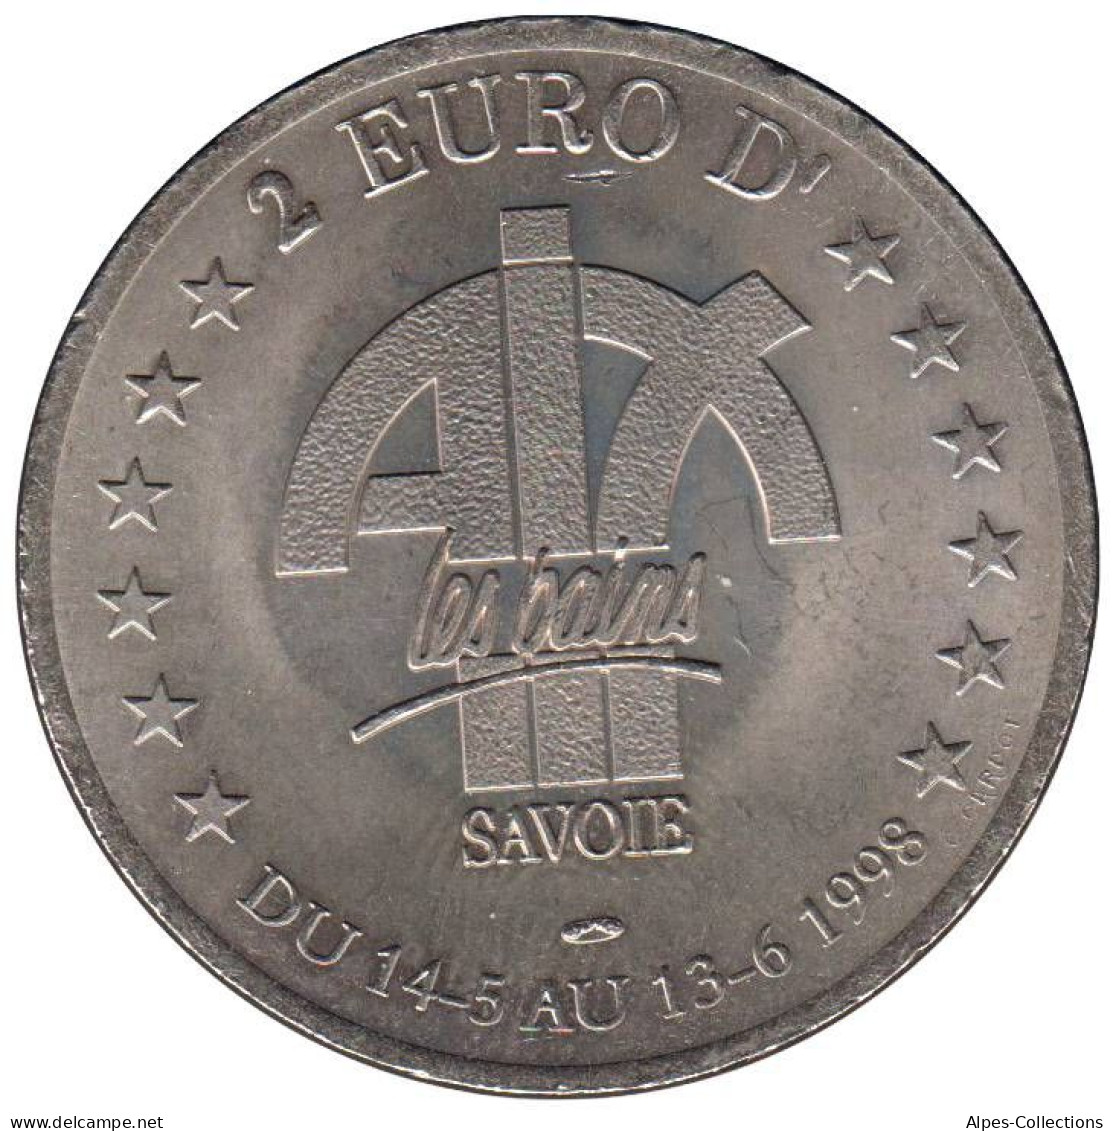 AIX LES BAINS - EU0020.3 - 2 EURO DES VILLES - Réf: T419 - 1998 - Euros De Las Ciudades